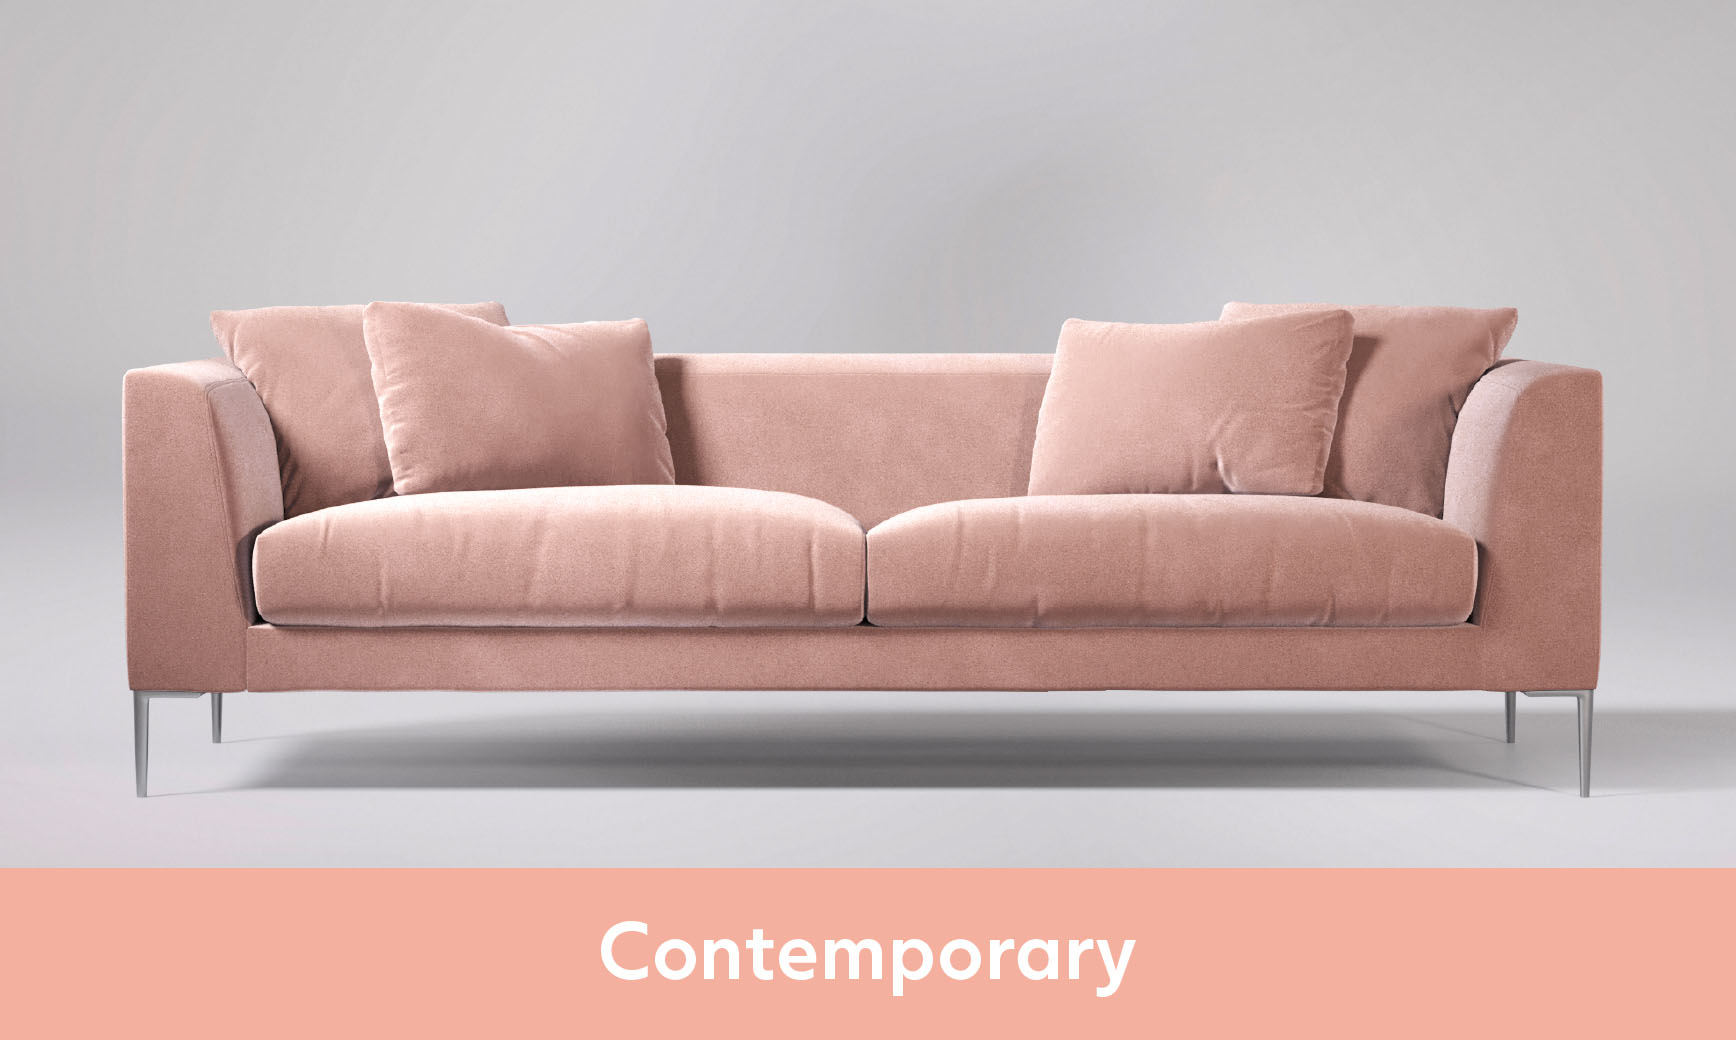 Contemporary Sofas Bespoke